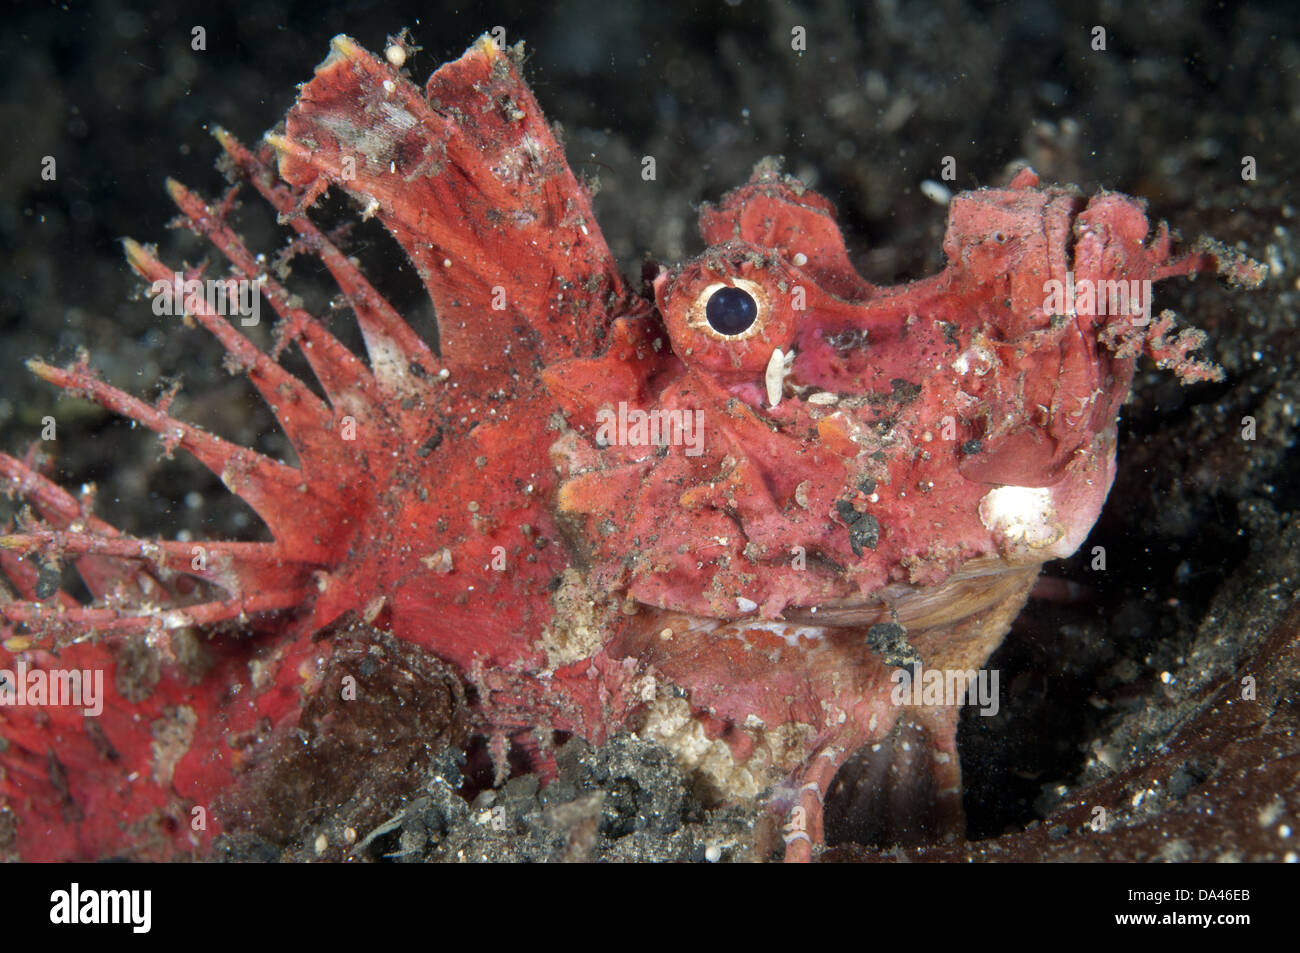 Rot stacheligen Devilfish (Inimicus Didactylus) Erwachsenen Nahaufnahme des Kopfes in der Nacht kann Lembeh Straße Sulawesi Sunda-Inseln in Indonesien Stockfoto